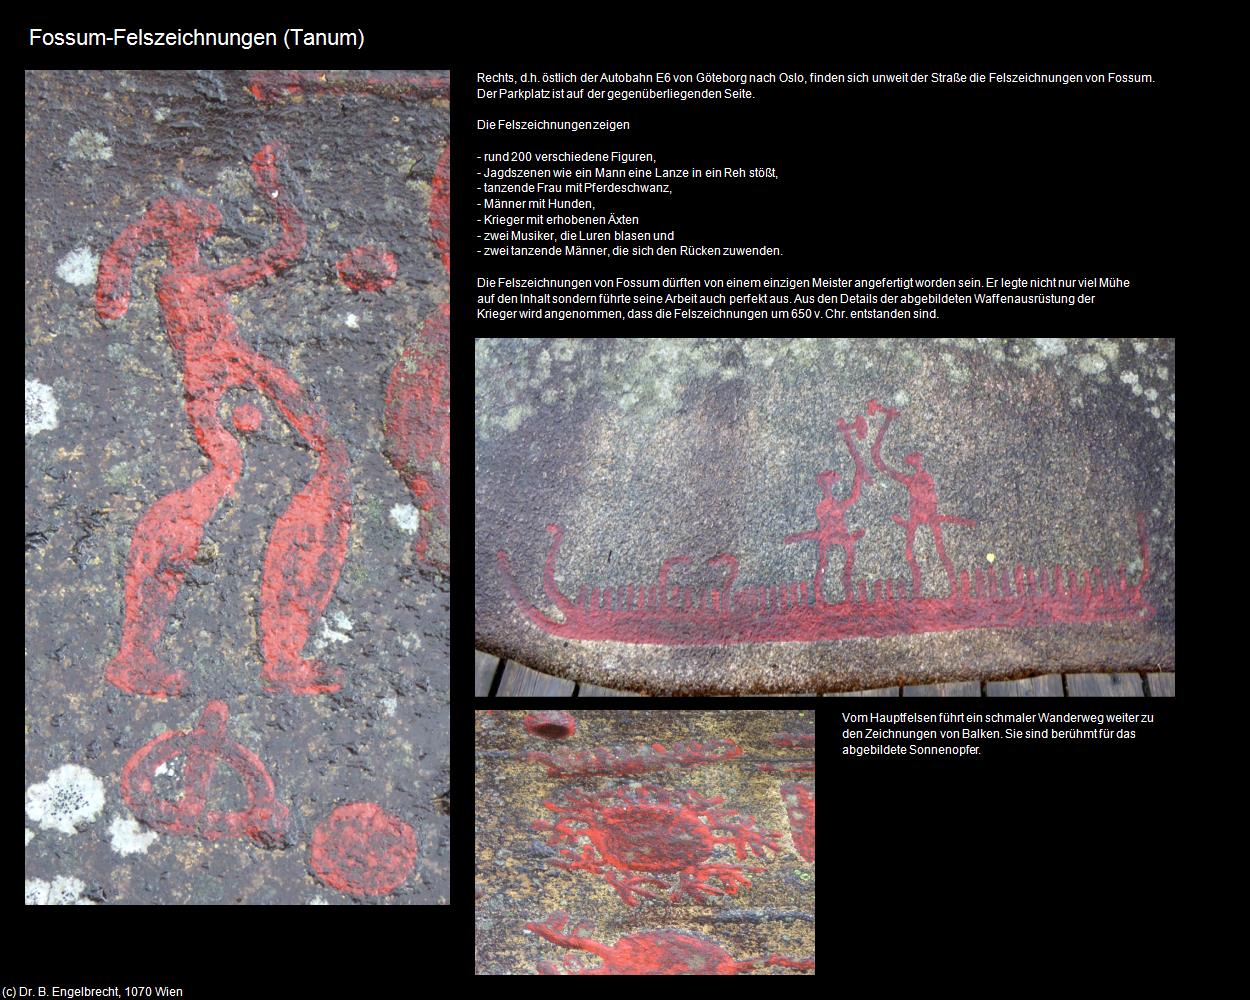 Fossum-Felszeichnungen (Tanum) in Kulturatlas-REISE nach NORWEGEN